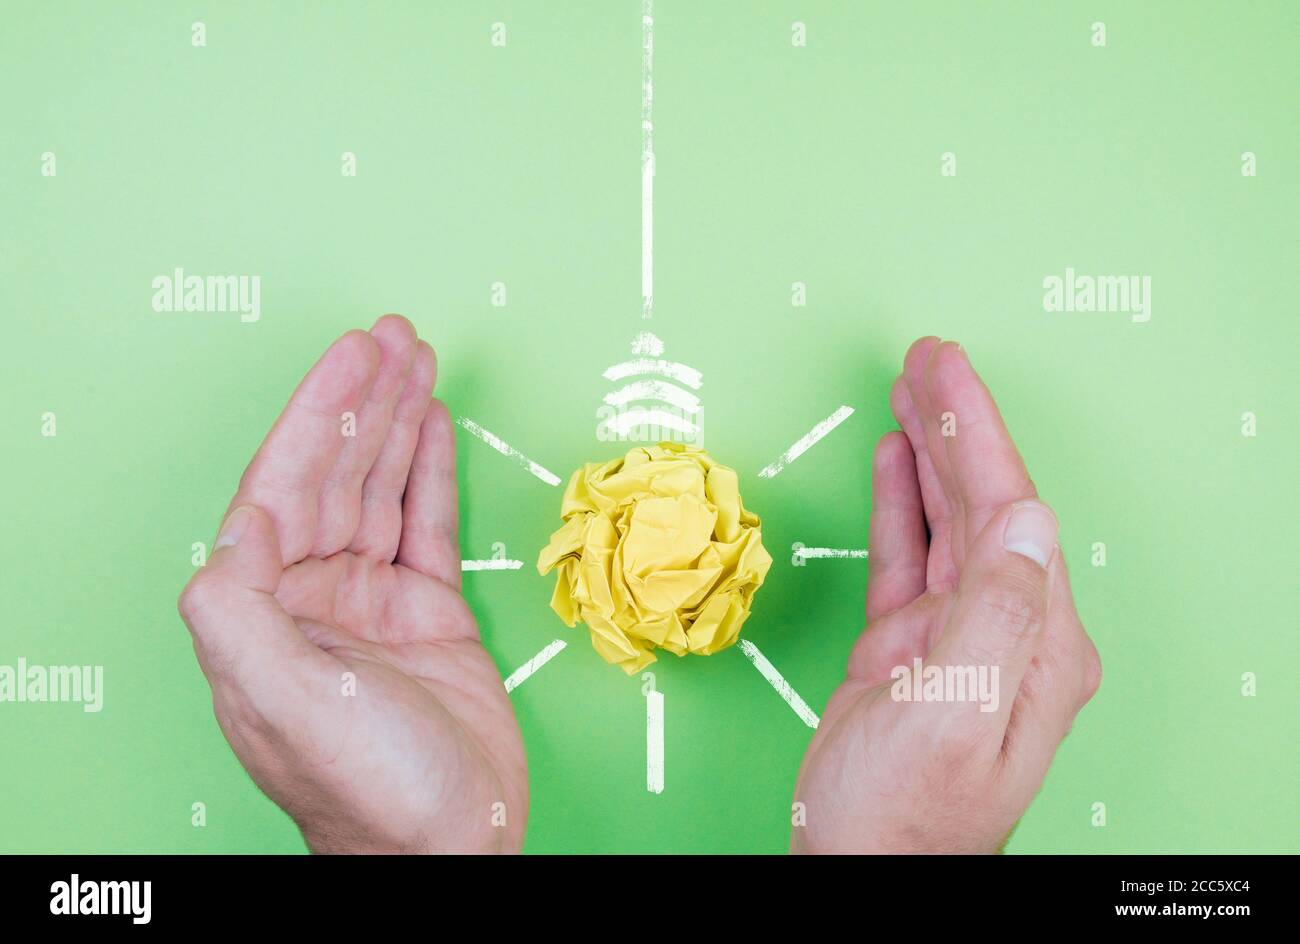 concept d'économie d'énergie et de durabilité, mains protégeant l'ampoule en papier jaune sur fond vert Banque D'Images